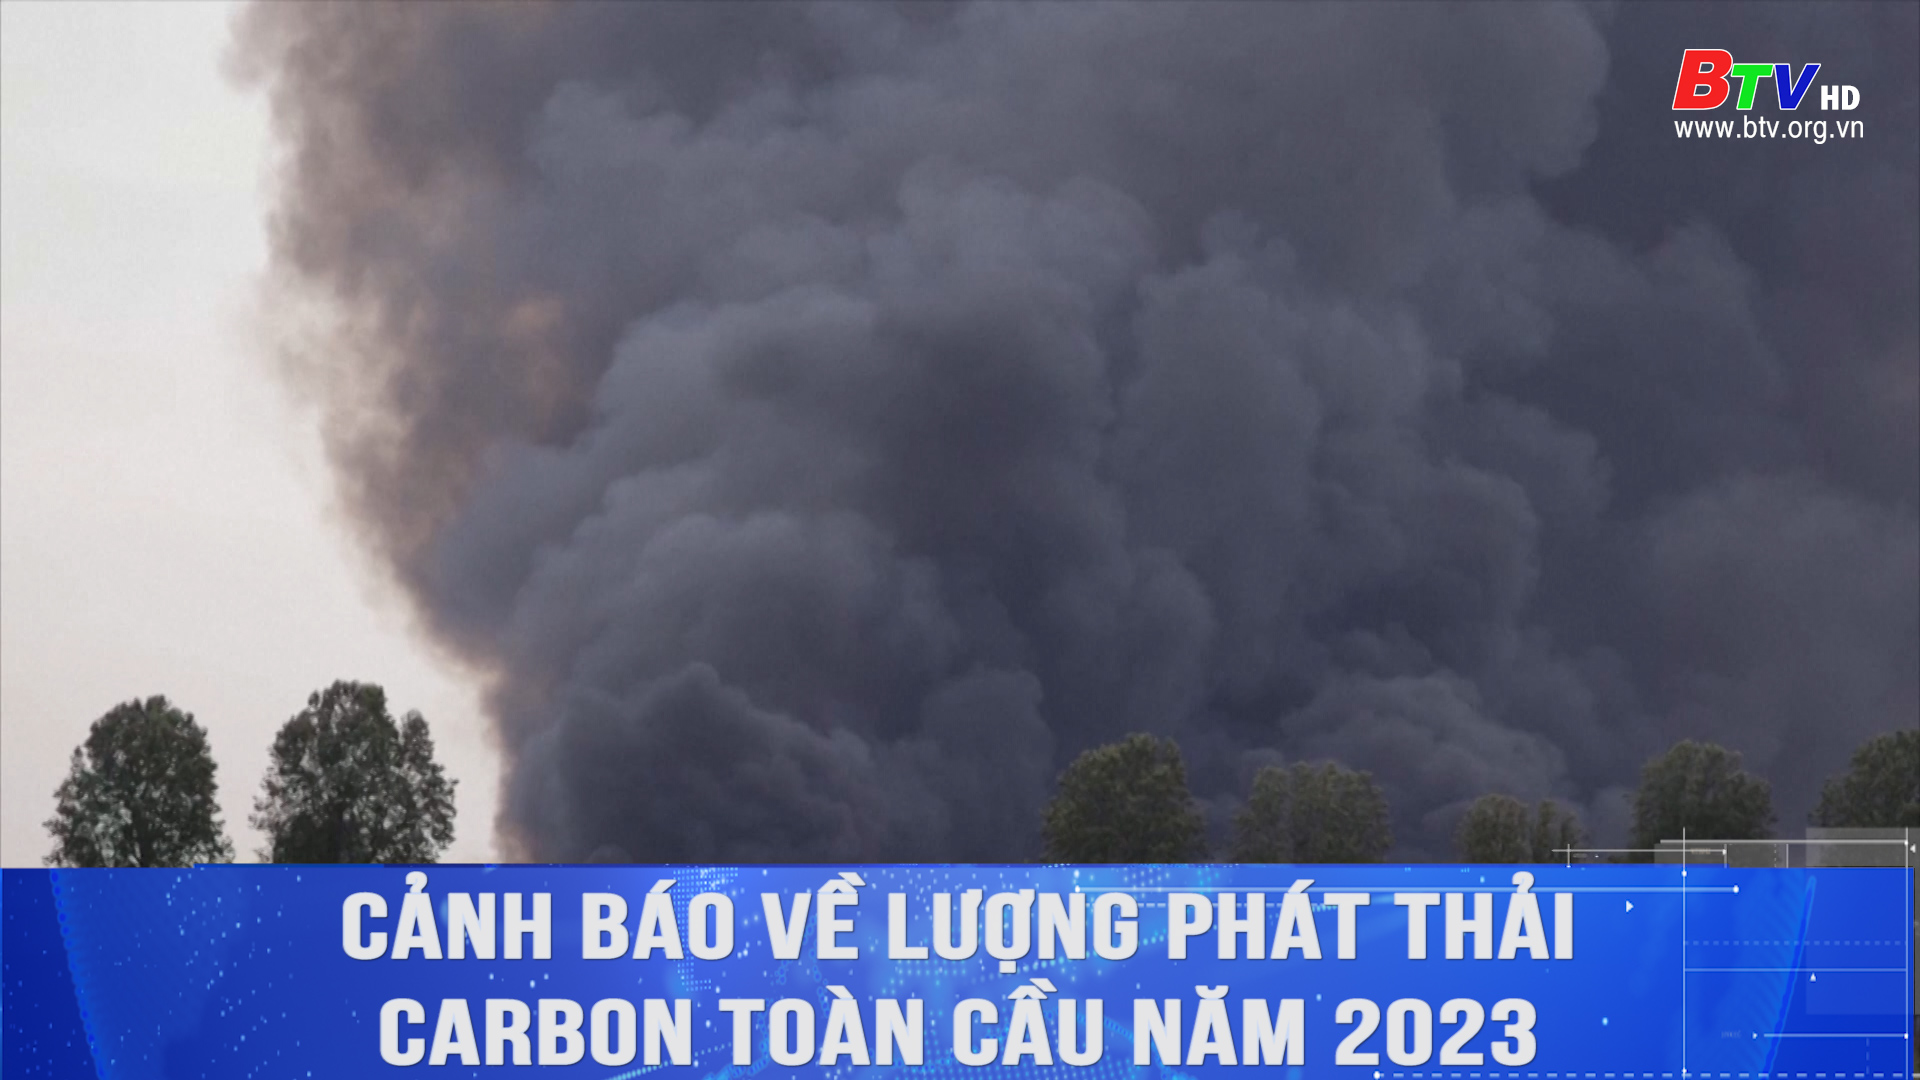 Cảnh báo về lượng phát thải carbon toàn cầu năm 2023 